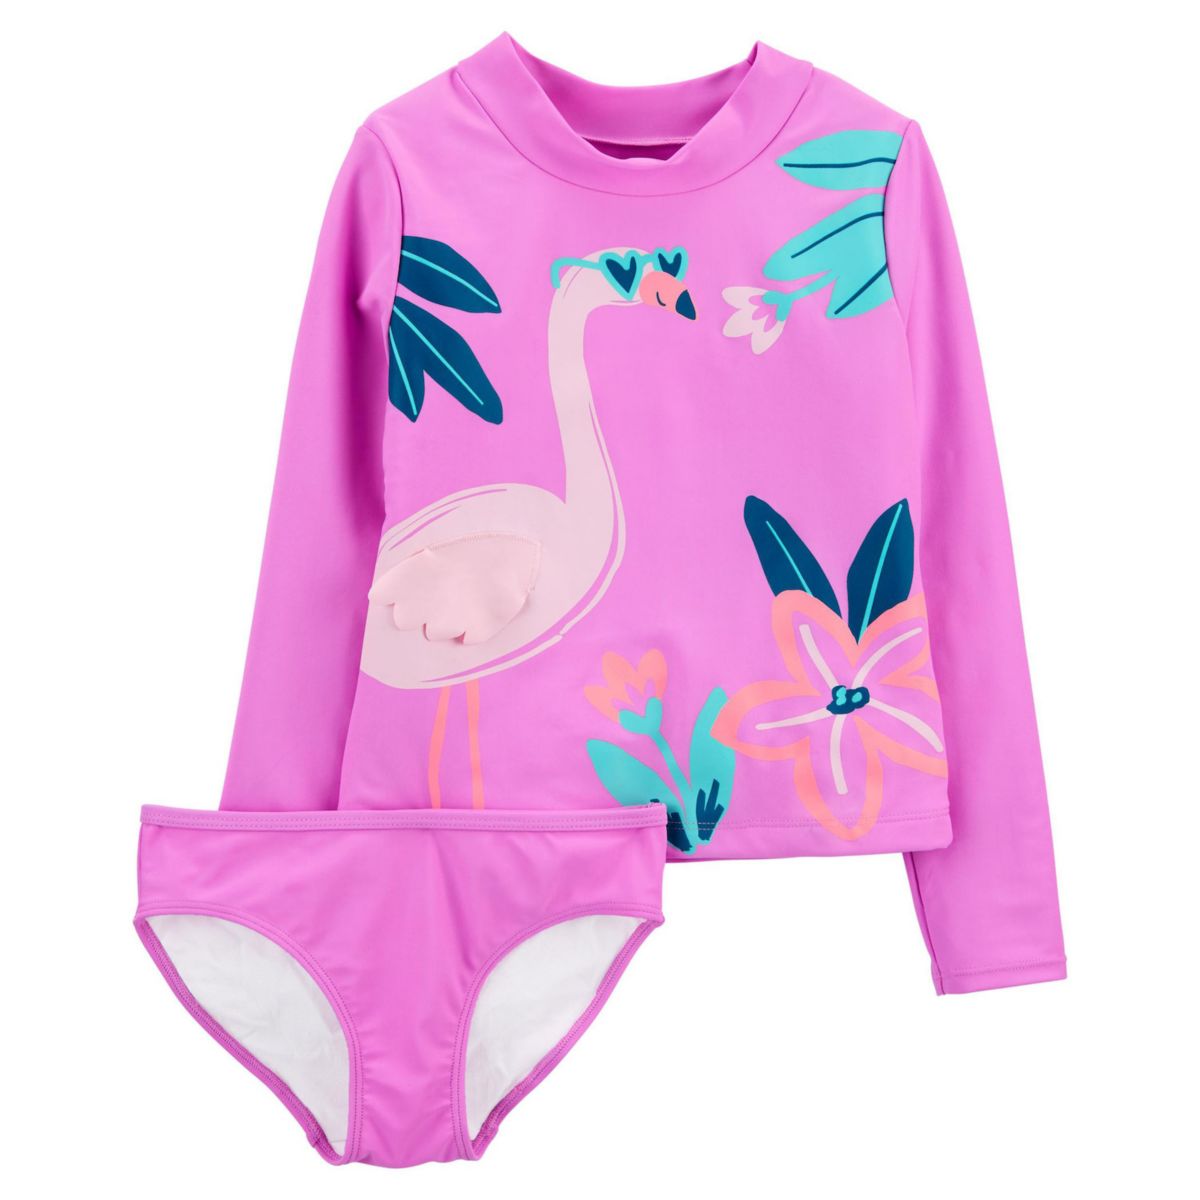 Комплект купального костюма Carter's Flamingo Rashguard с верхом и низом для девочек 4-14 лет Carter's